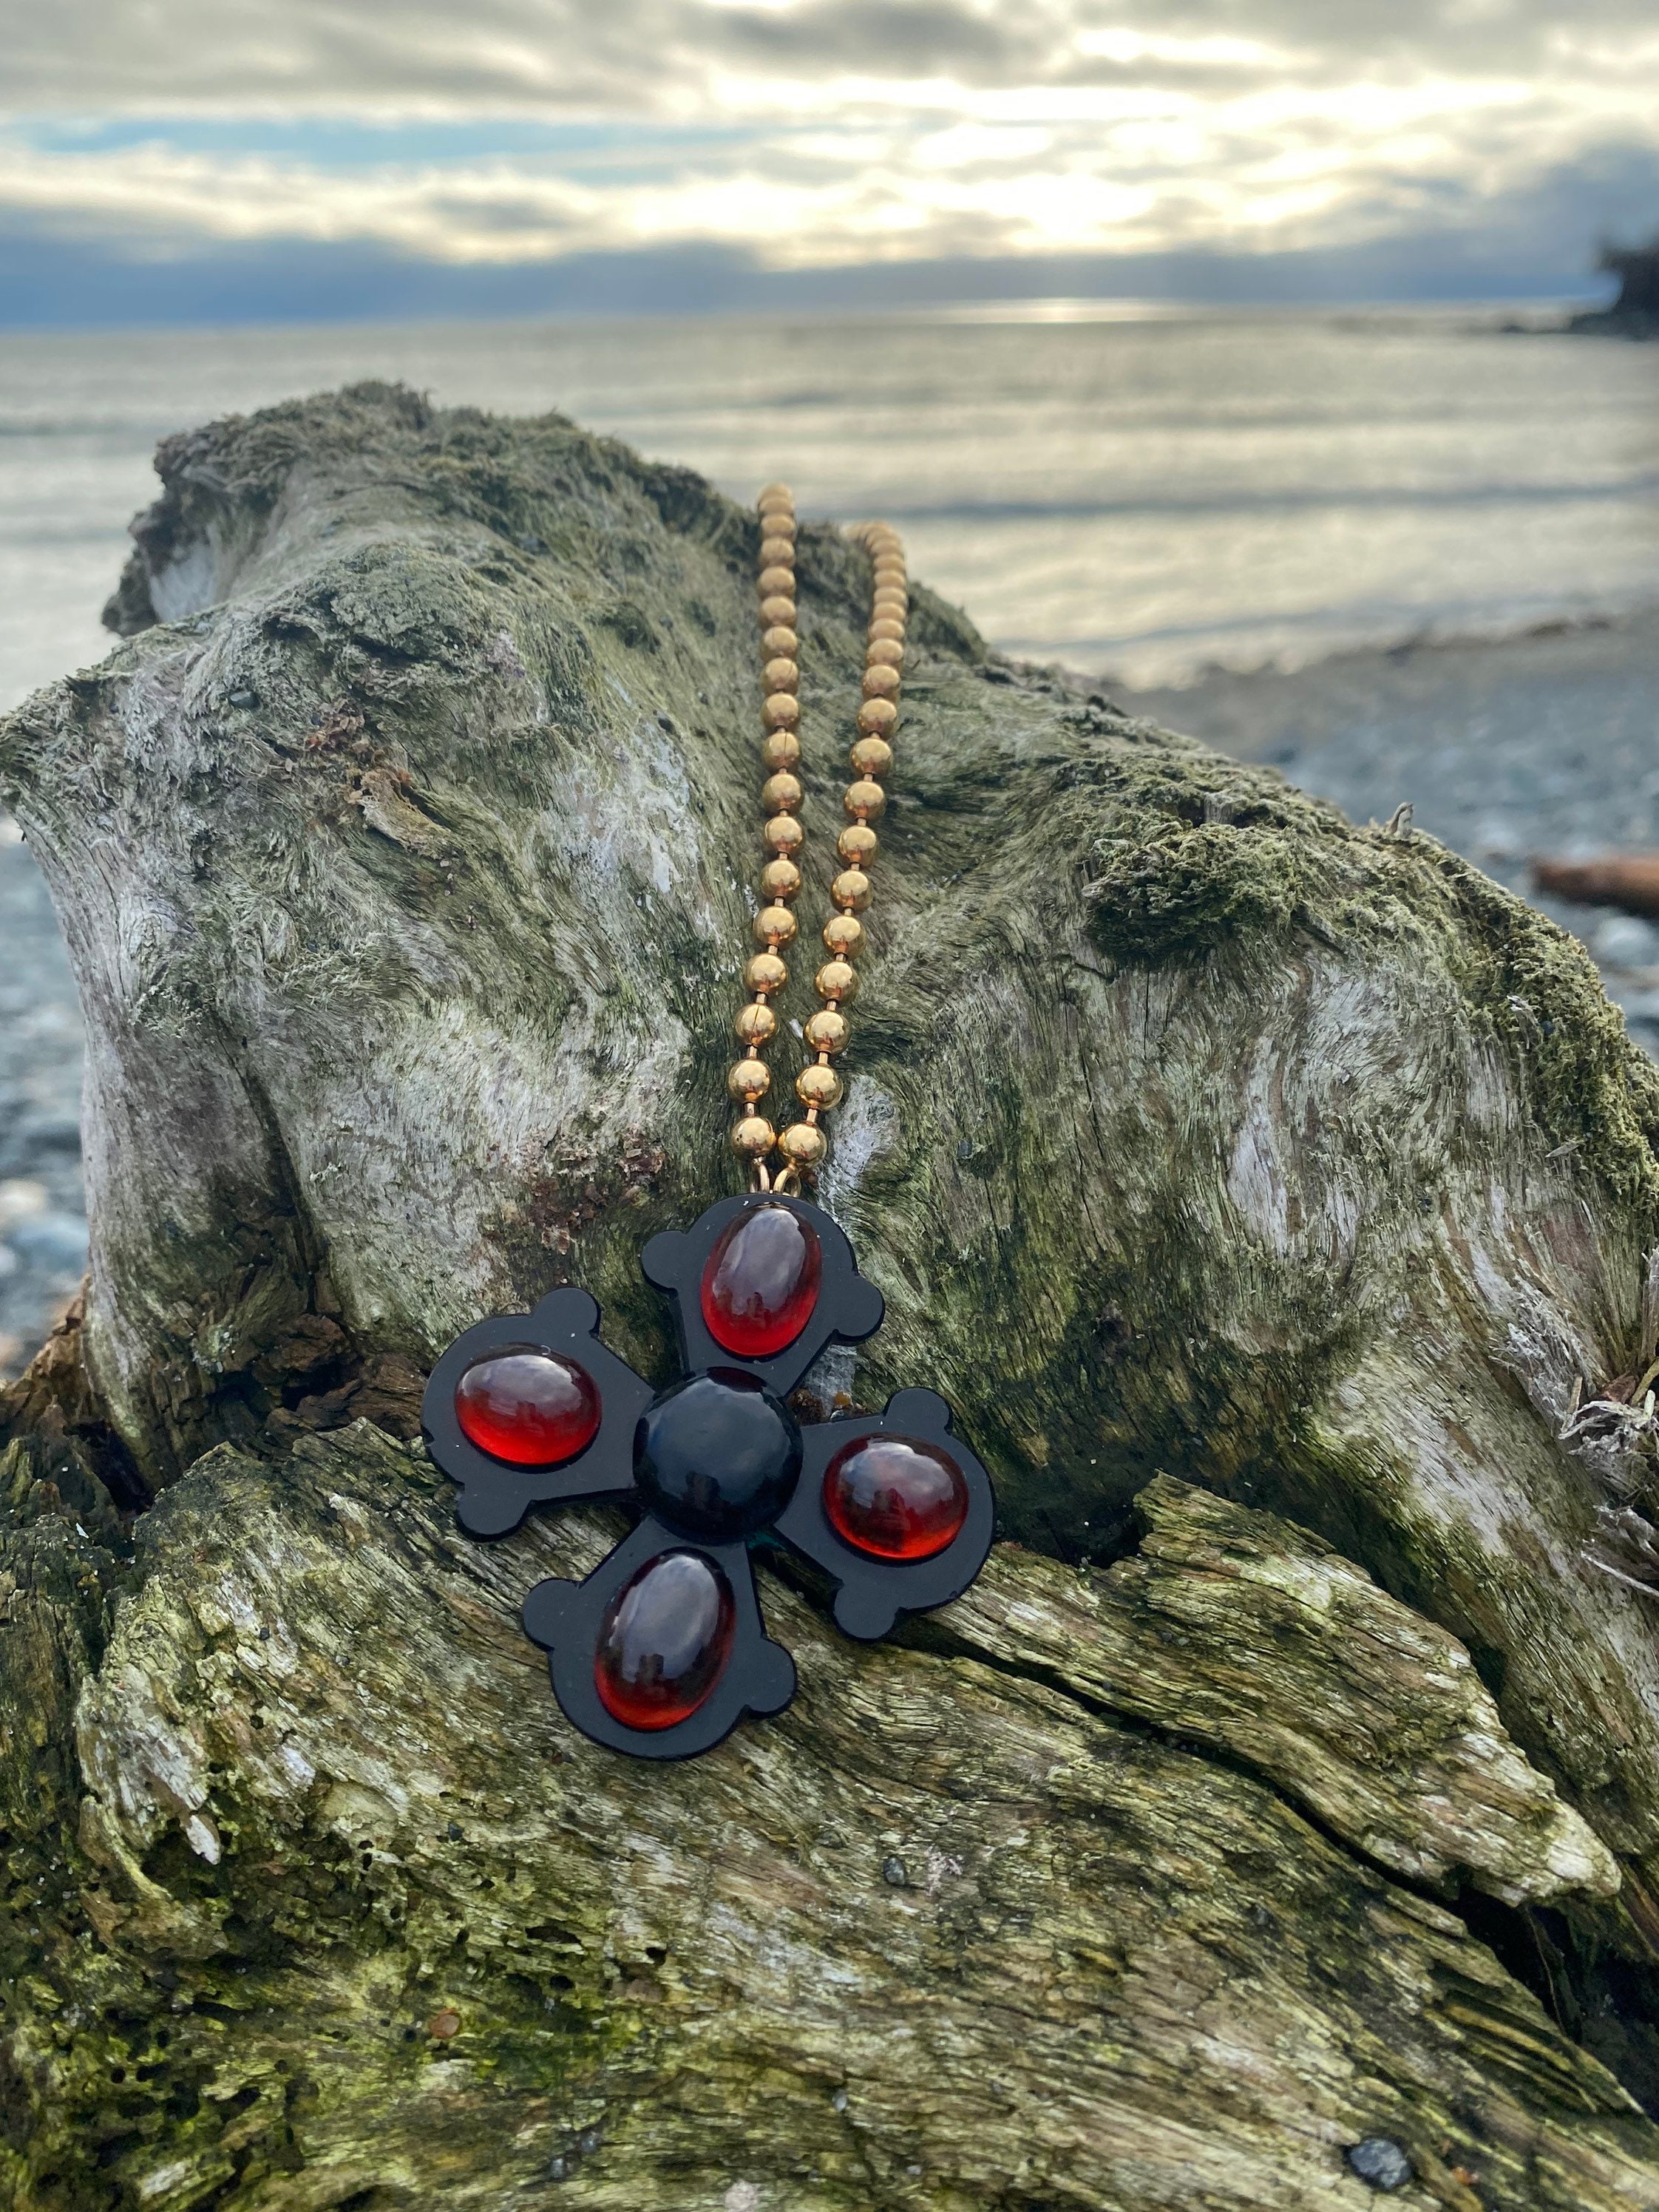 Necklace Handbag - Black, Garnet Handle